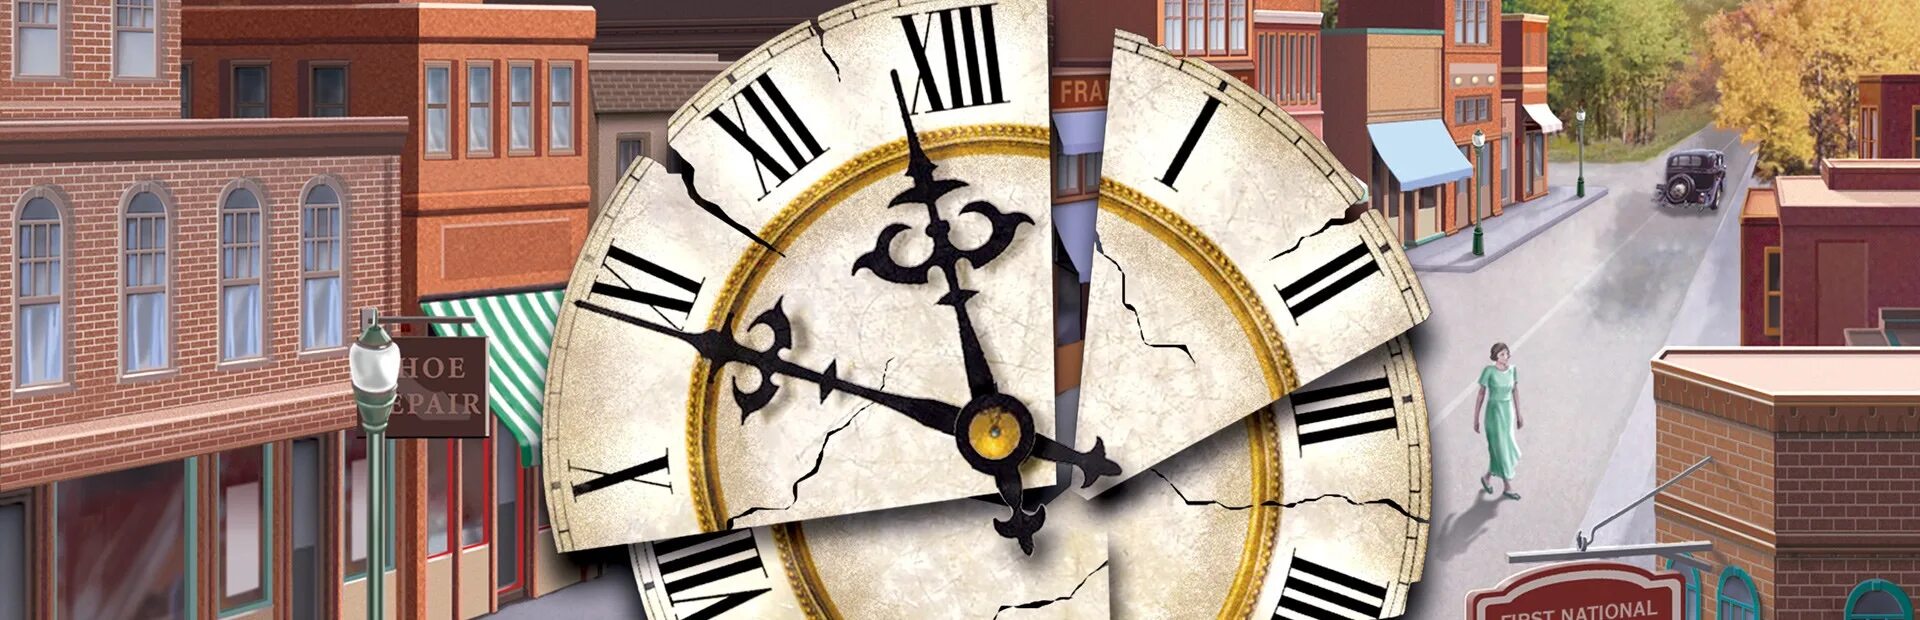 Nancy Drew Secret of the old Clock обложка. Тайна старинных часов. Тайна старых часов